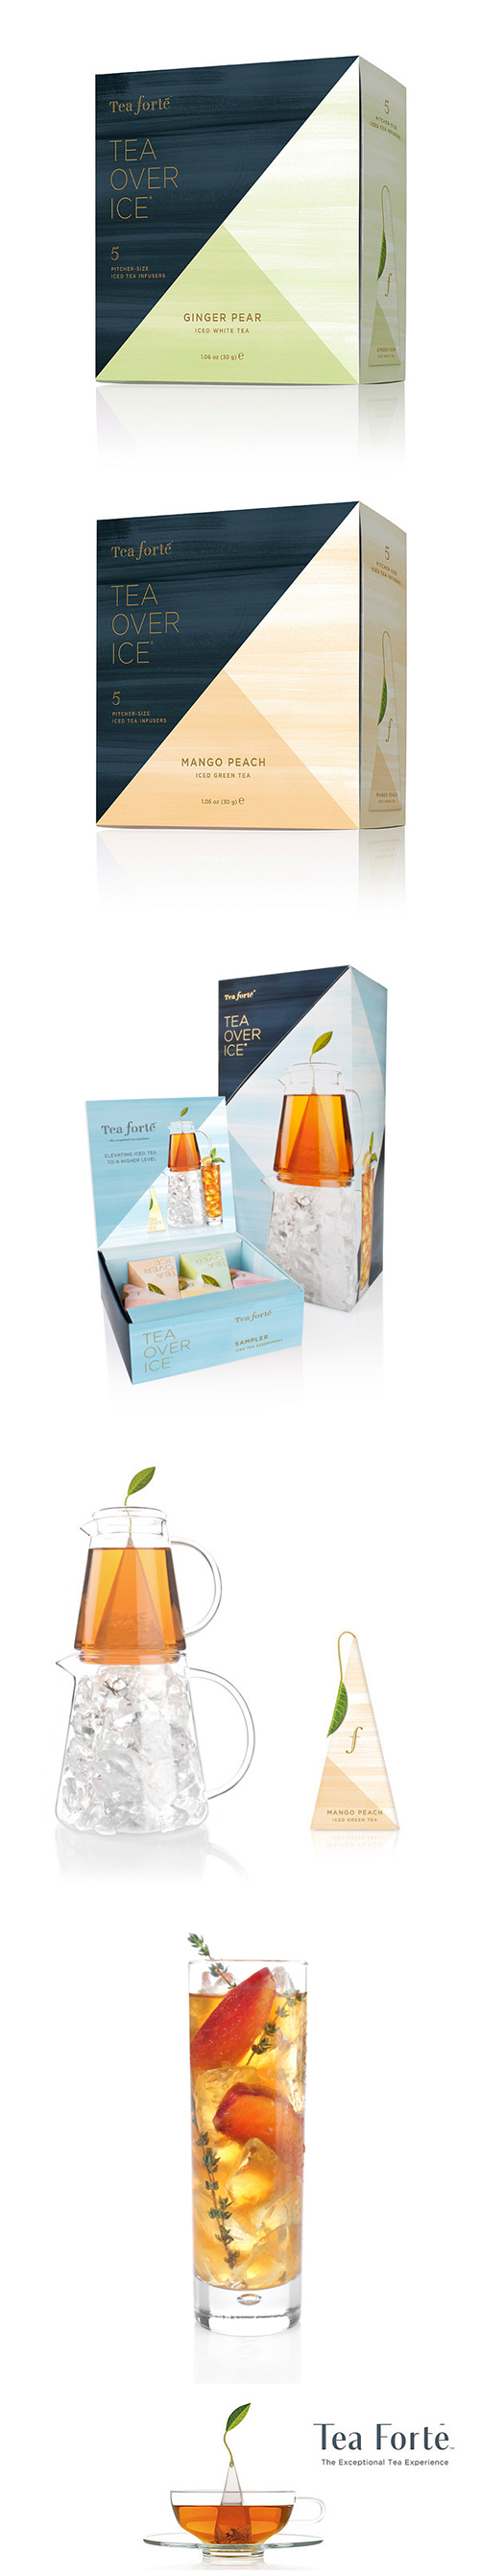 【盛夏消暑特惠】Tea forte 5入金字塔型絲質冰釀茶包【白薑水梨冰茶+芒果香桃冰茶】